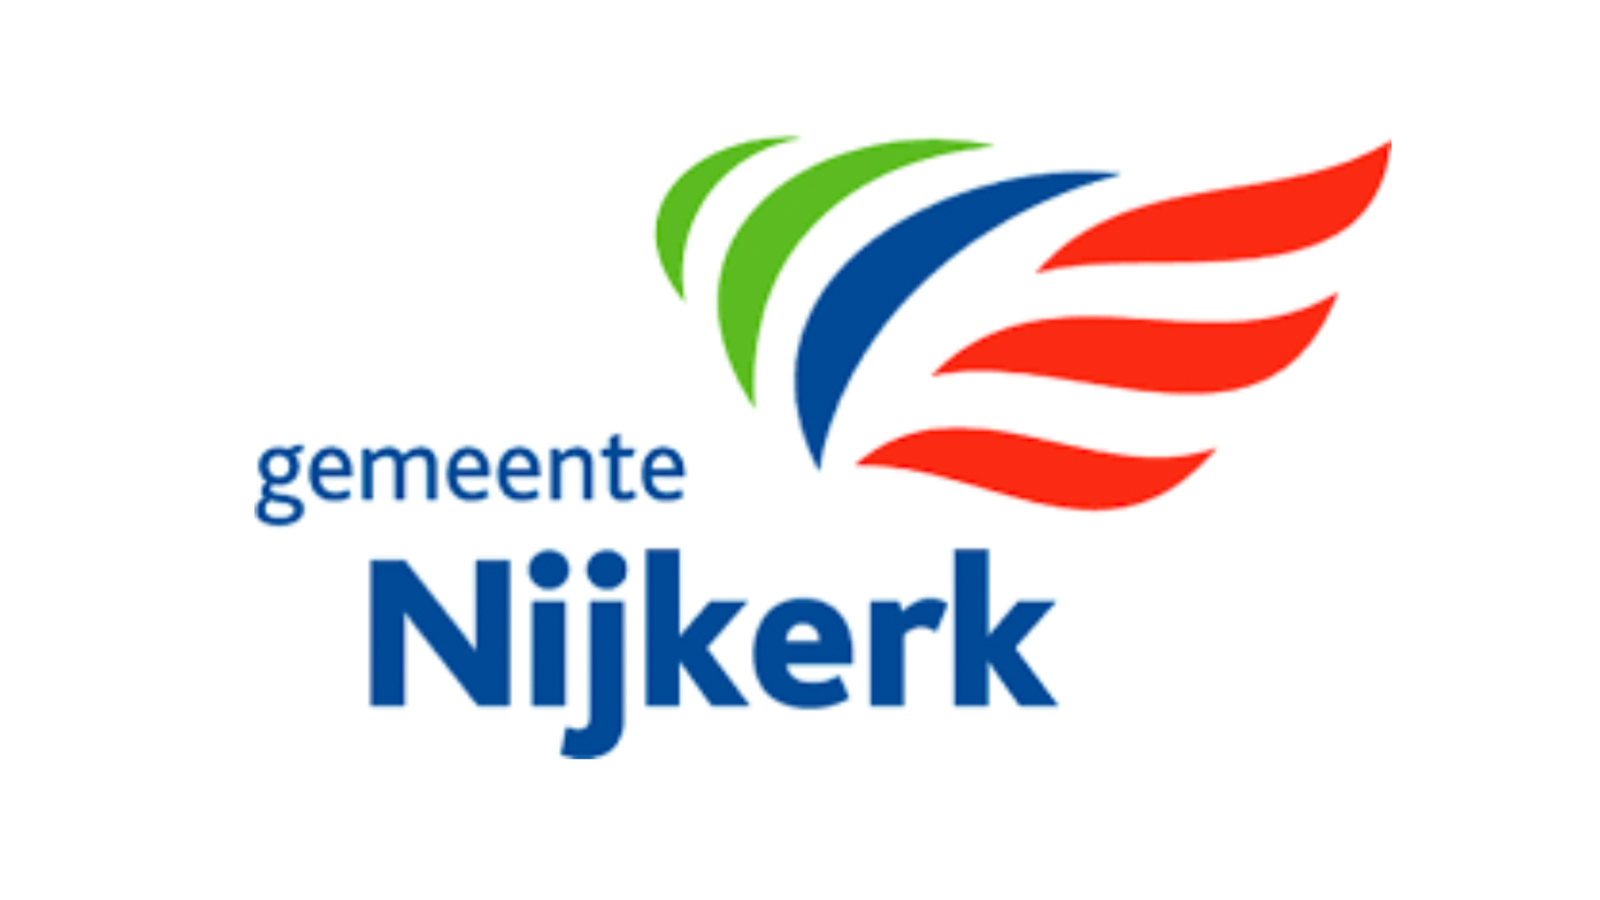 Gemeente Nijkerk